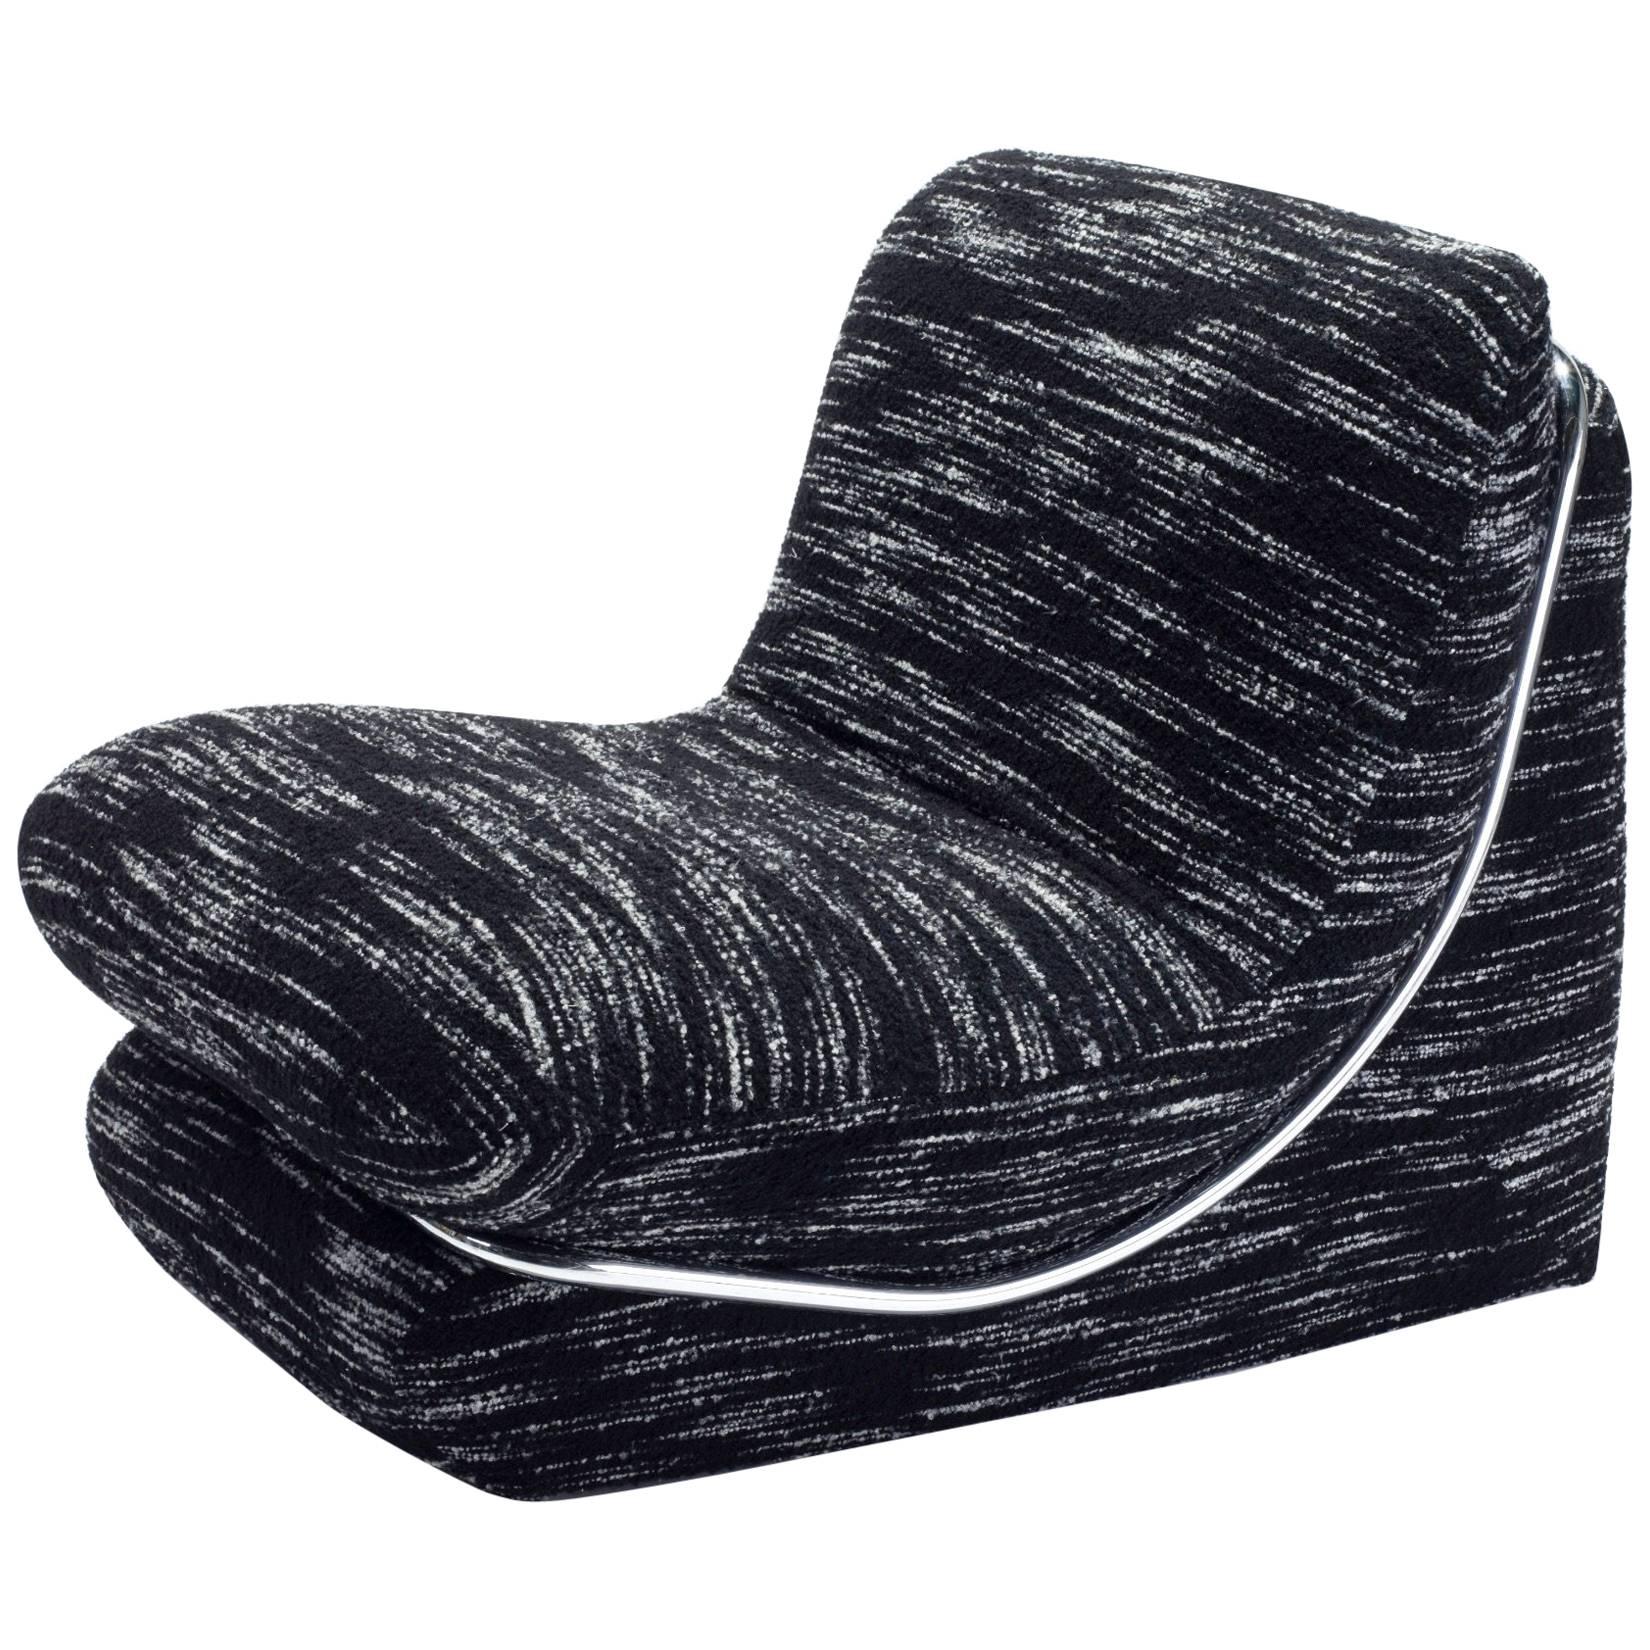 1980s Italian Lounge Chair